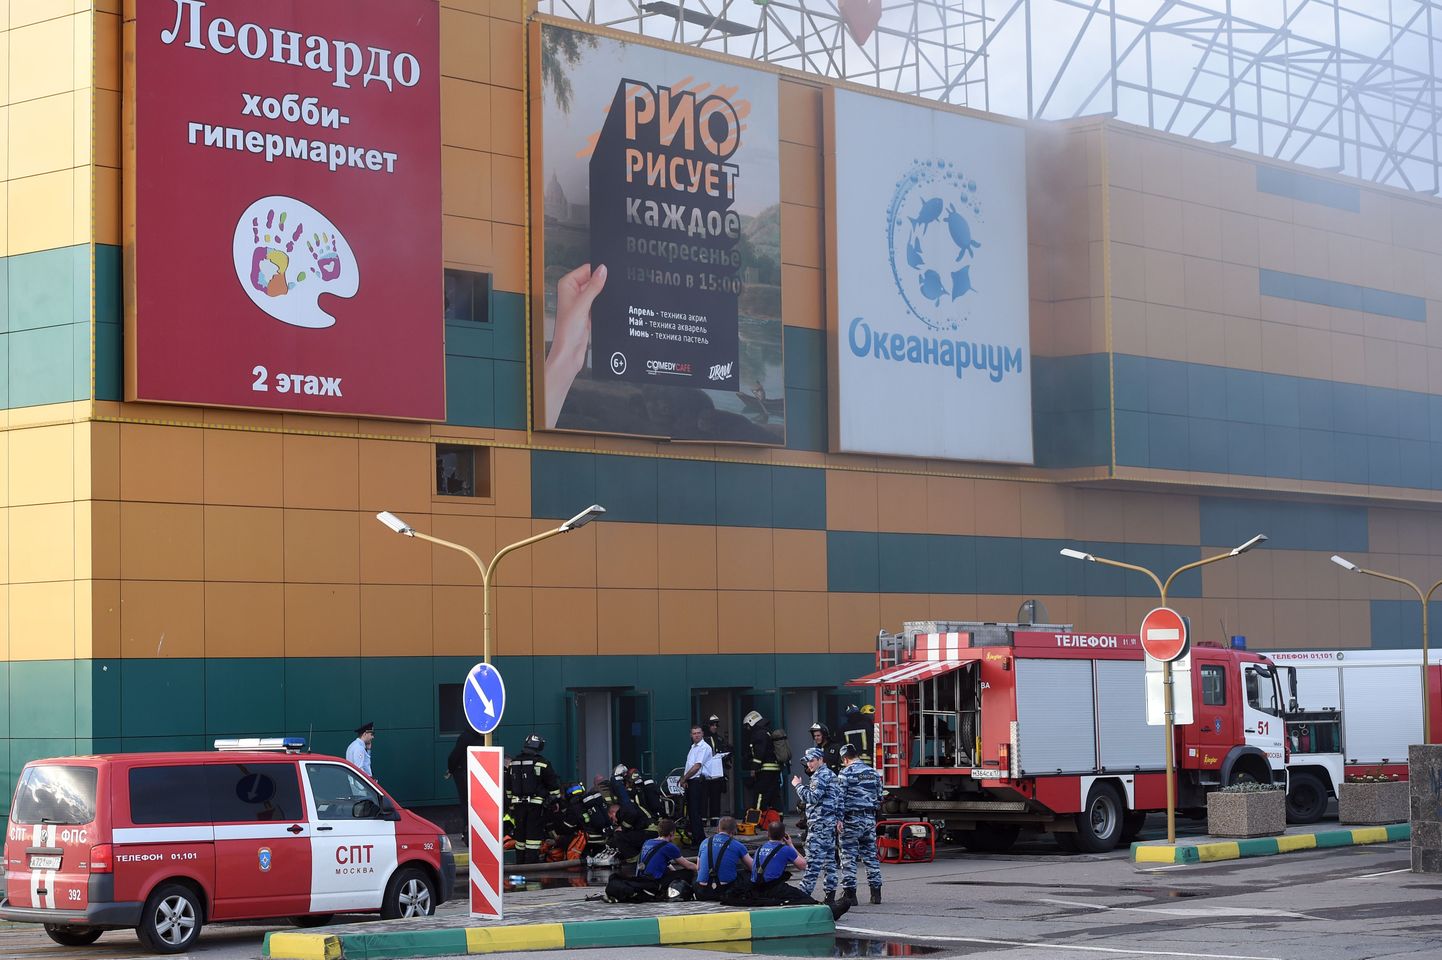 Venemaa kommertskinnisavar sektori investeeringud mõõnavad. Illustreerival pildil näete tulekahju ühes Moskva kaubanduskeskuses.